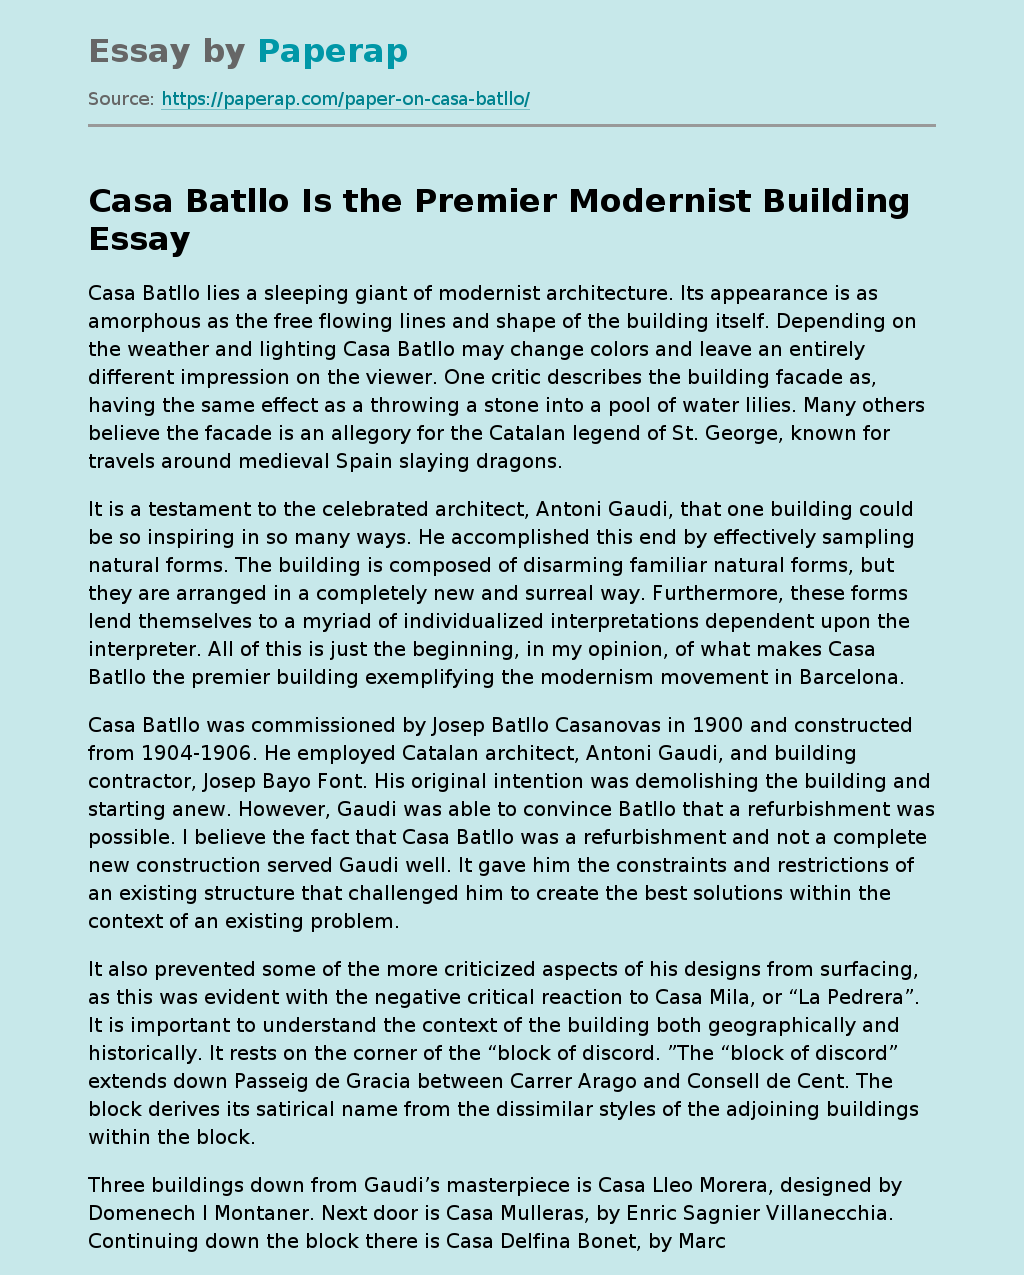 Casa Batllo Is the Premier Modernist Building